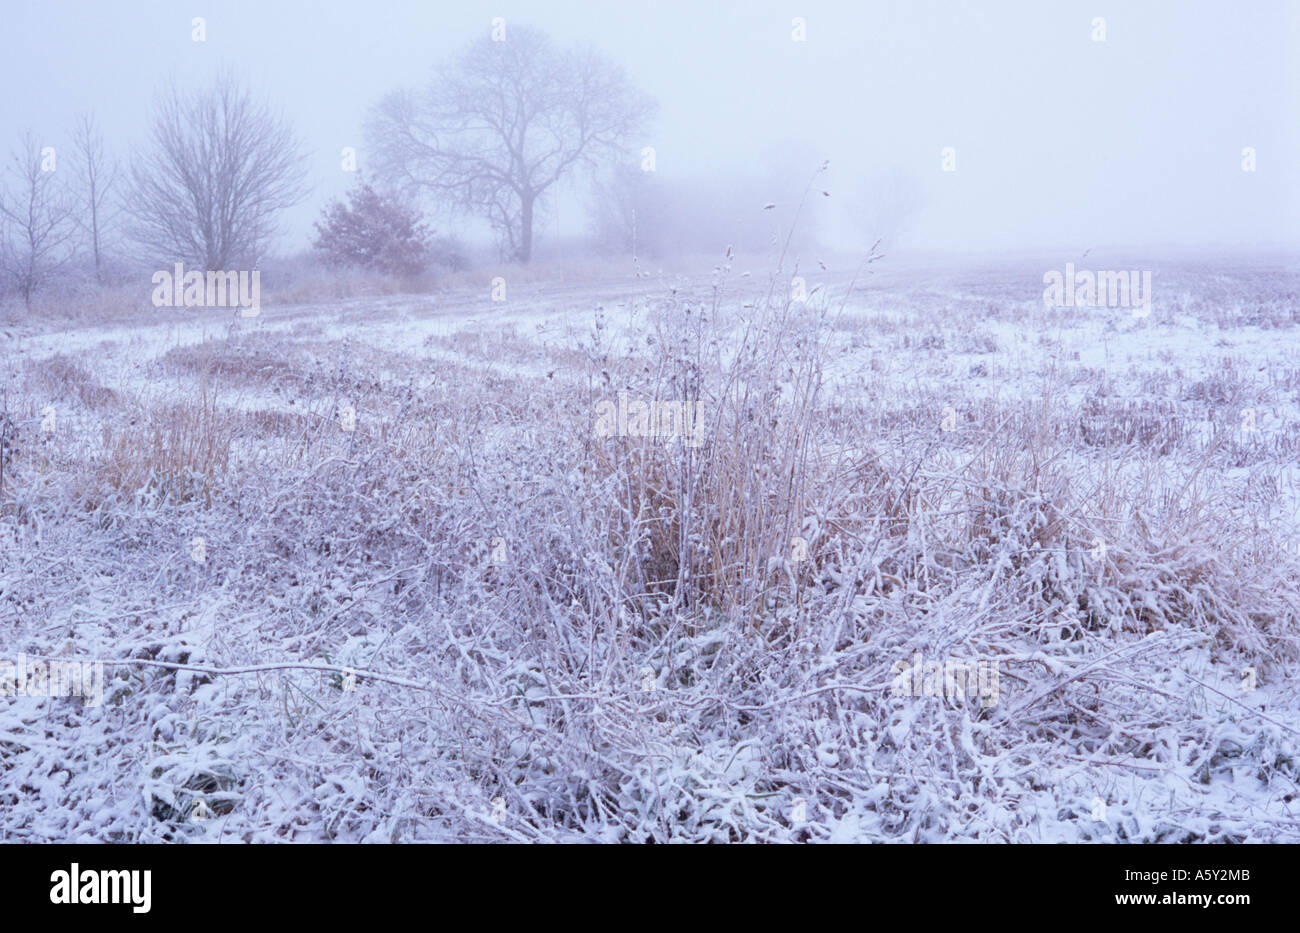 Düster, kalt verschneite Winterlandschaft bei frostigen Nebel mit Gräsern Brache Stoppeln Bereich Bäume und Sträucher Stockfoto